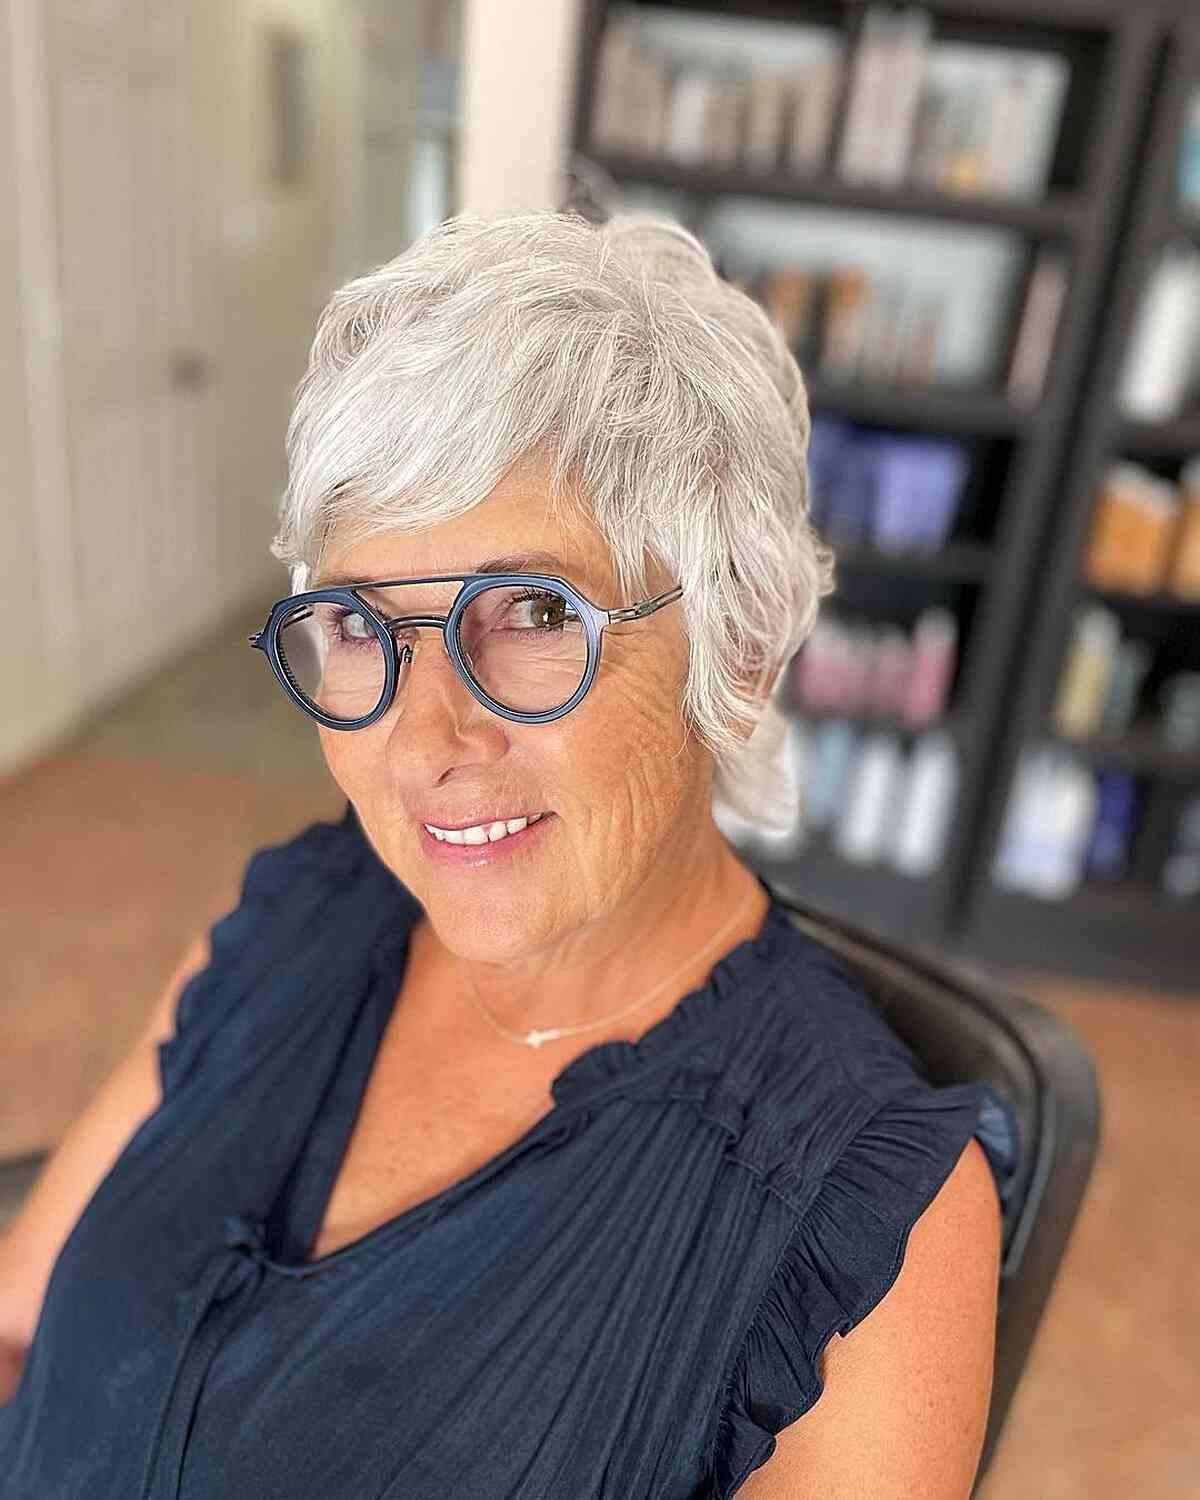 Short White Shag for Older Women Aged 60 with Glasses